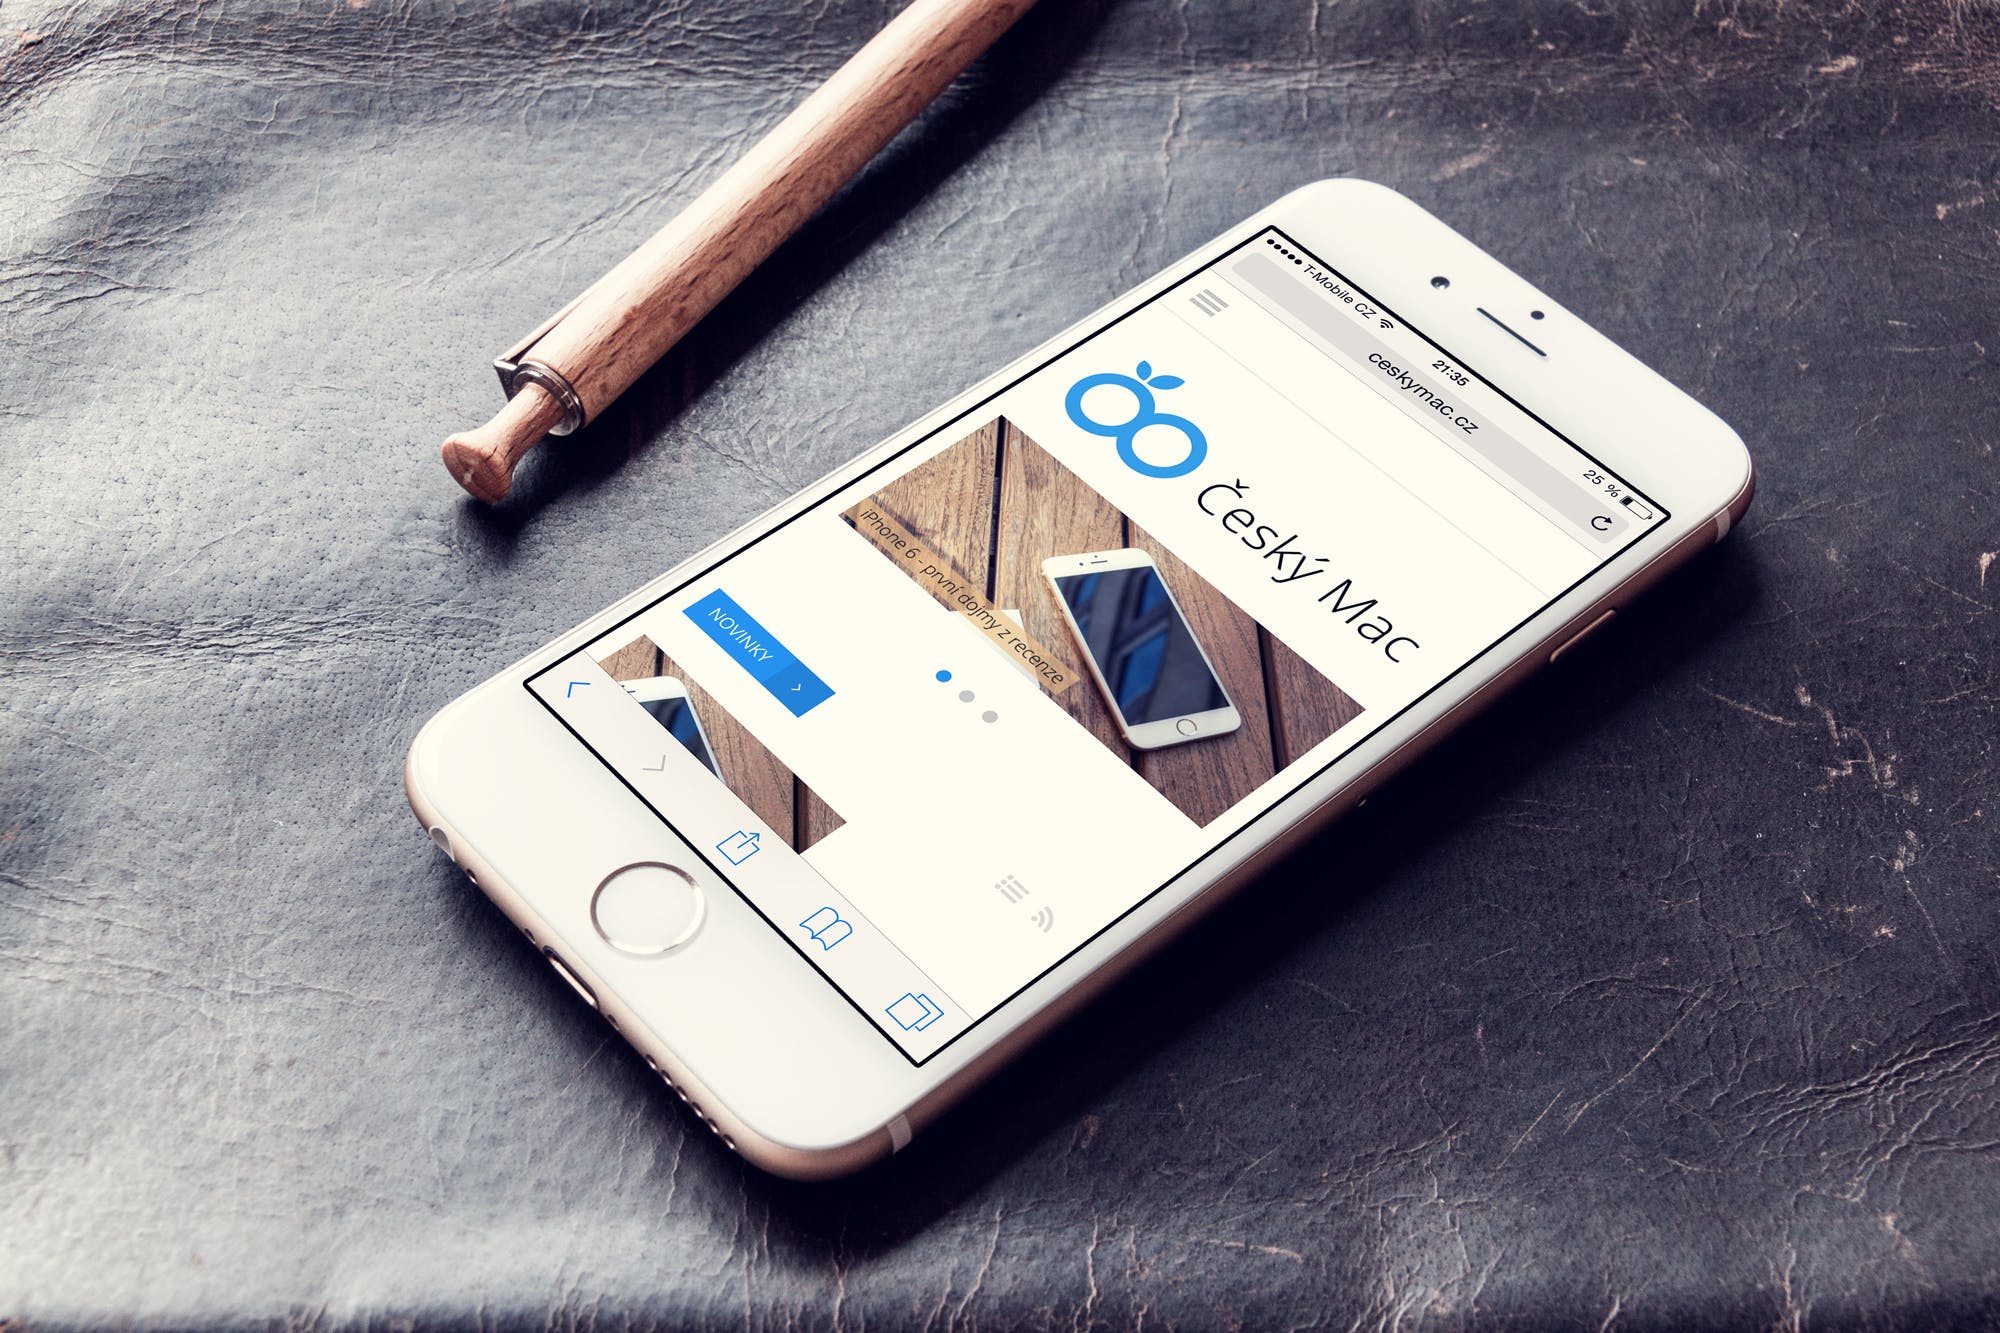 实景背景实体按键款iPhone手机屏幕预览第一素材精选样机 Phone 6 – Photorealistic Mock-Up插图(8)